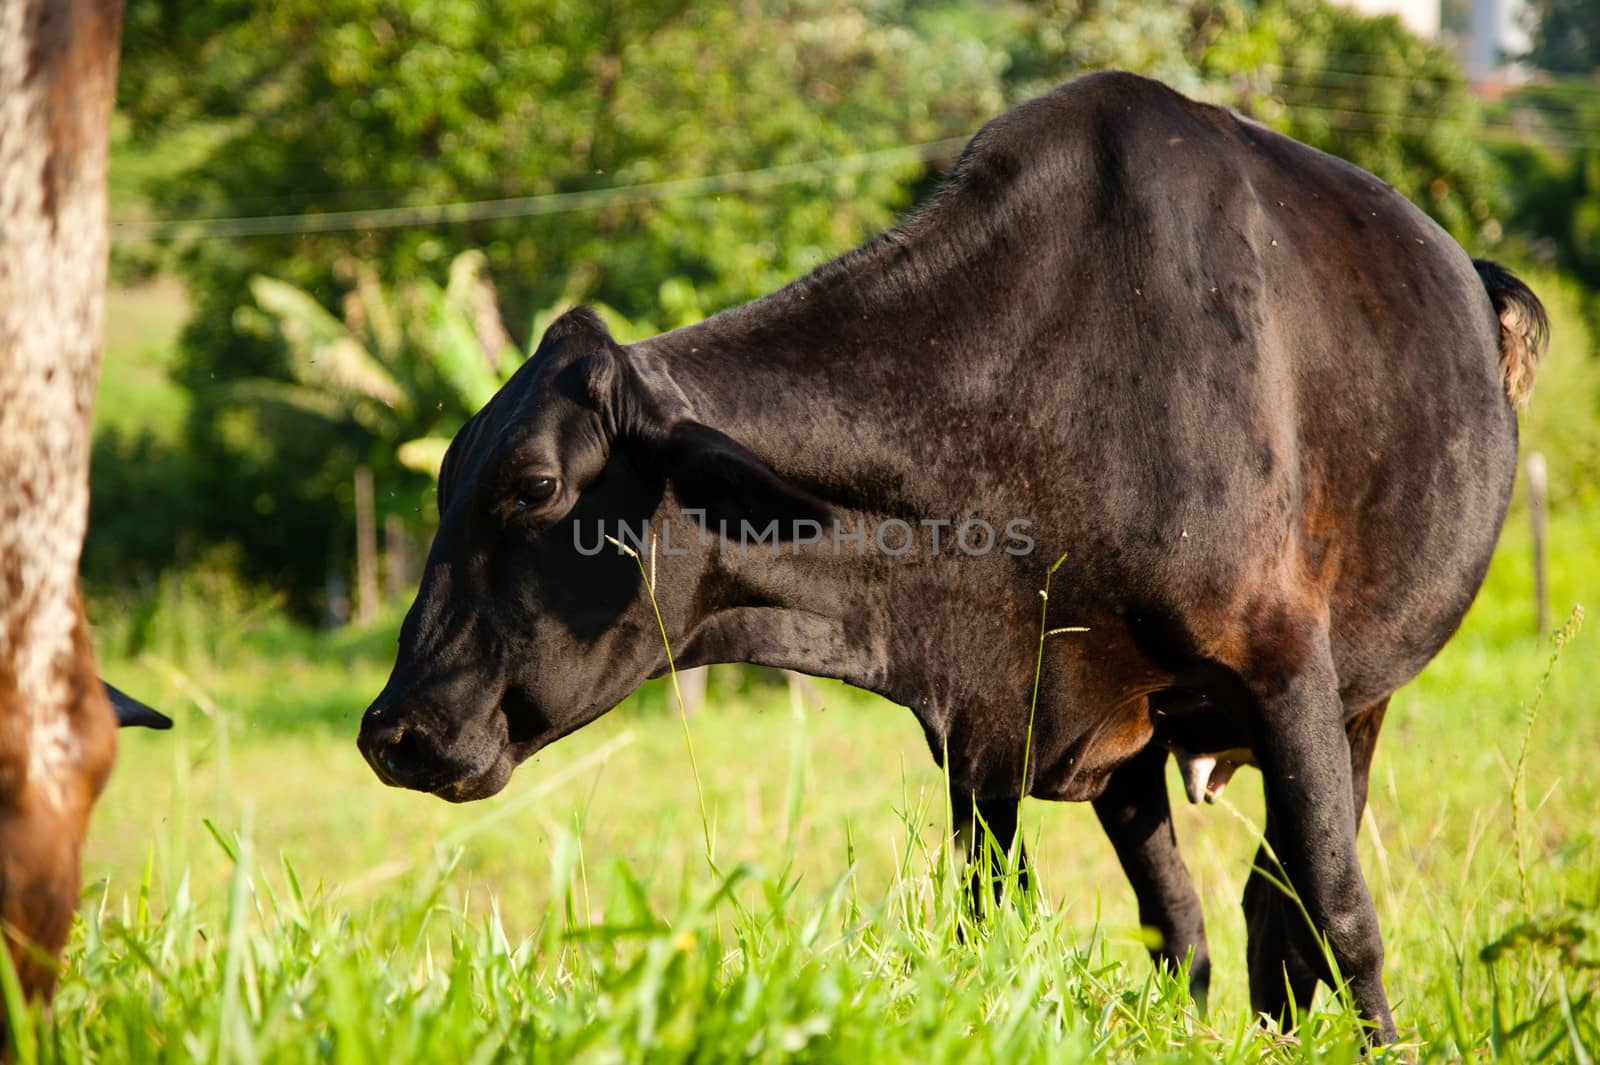 Black cow in green field by CelsoDiniz